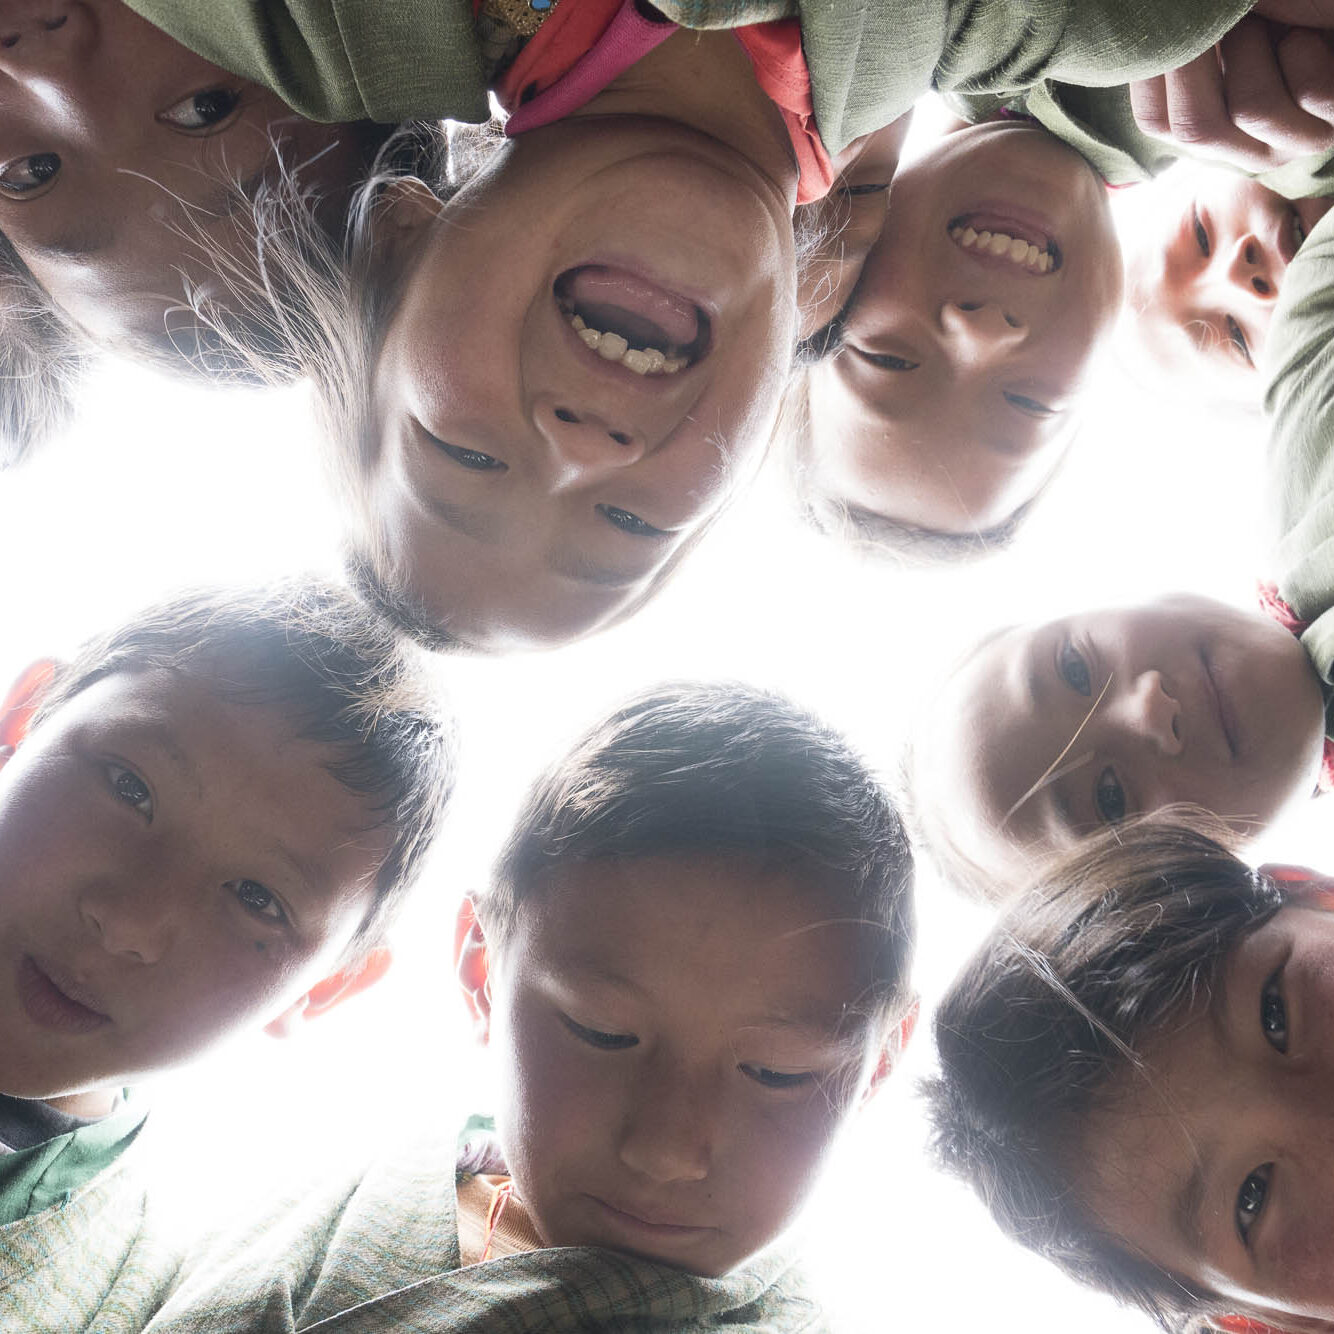 Bhutanese children laughing and having fun